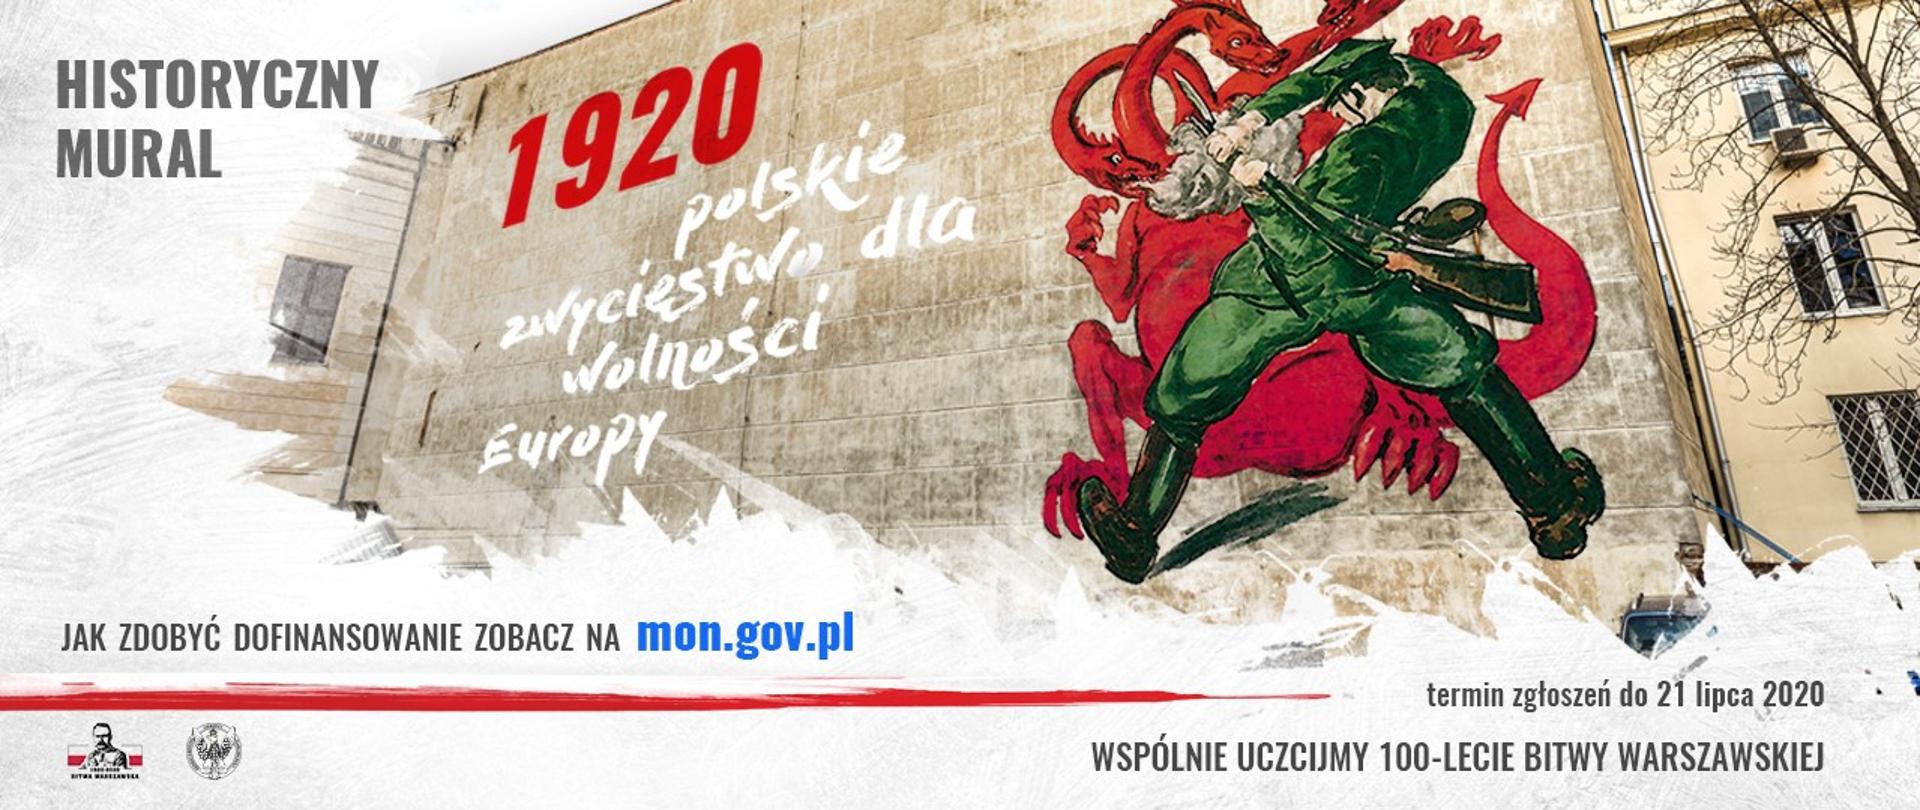 Grafika - Plakat do konkursu - Historyczny Mural - 1920 polskie zwycięstwo dla wolności Europy. Mural z napisem 1920 polskie zwycięstwo dla wolności Europy na budynku mieszkalnym.